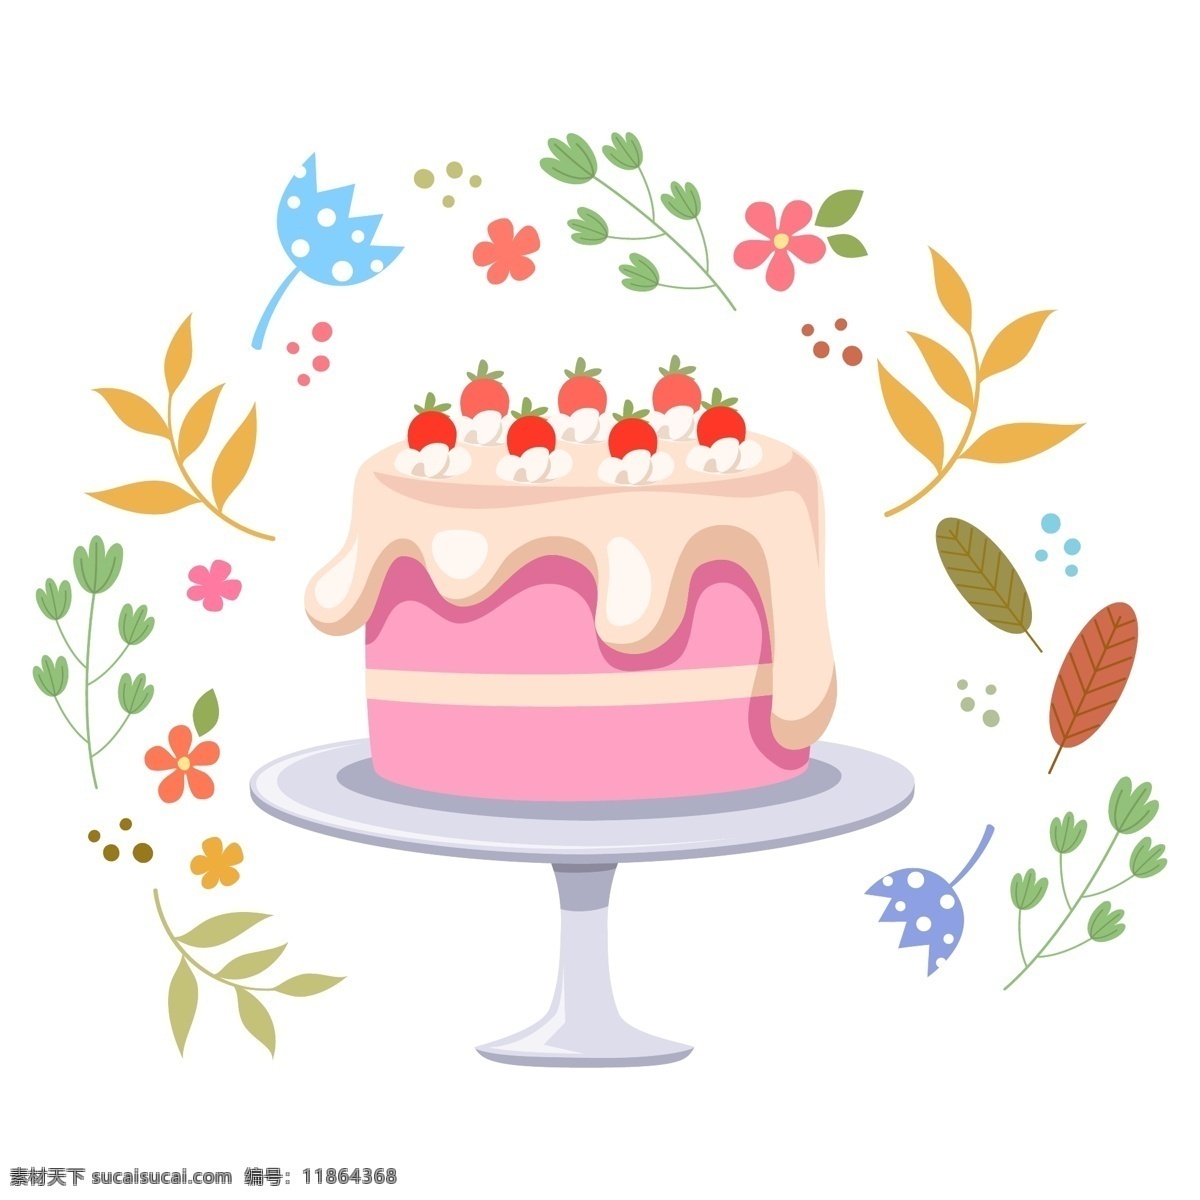 蛋糕 矢量图 蛋糕矢量 矢量蛋糕 蛋糕矢量图 手绘蛋糕 蛋糕元素 蛋糕素材 生日蛋糕 生日蛋糕元素 生日蛋糕素材 生日蛋糕矢量 矢量生日蛋糕 生日快乐 蛋糕矢量元素 蛋糕矢量素材